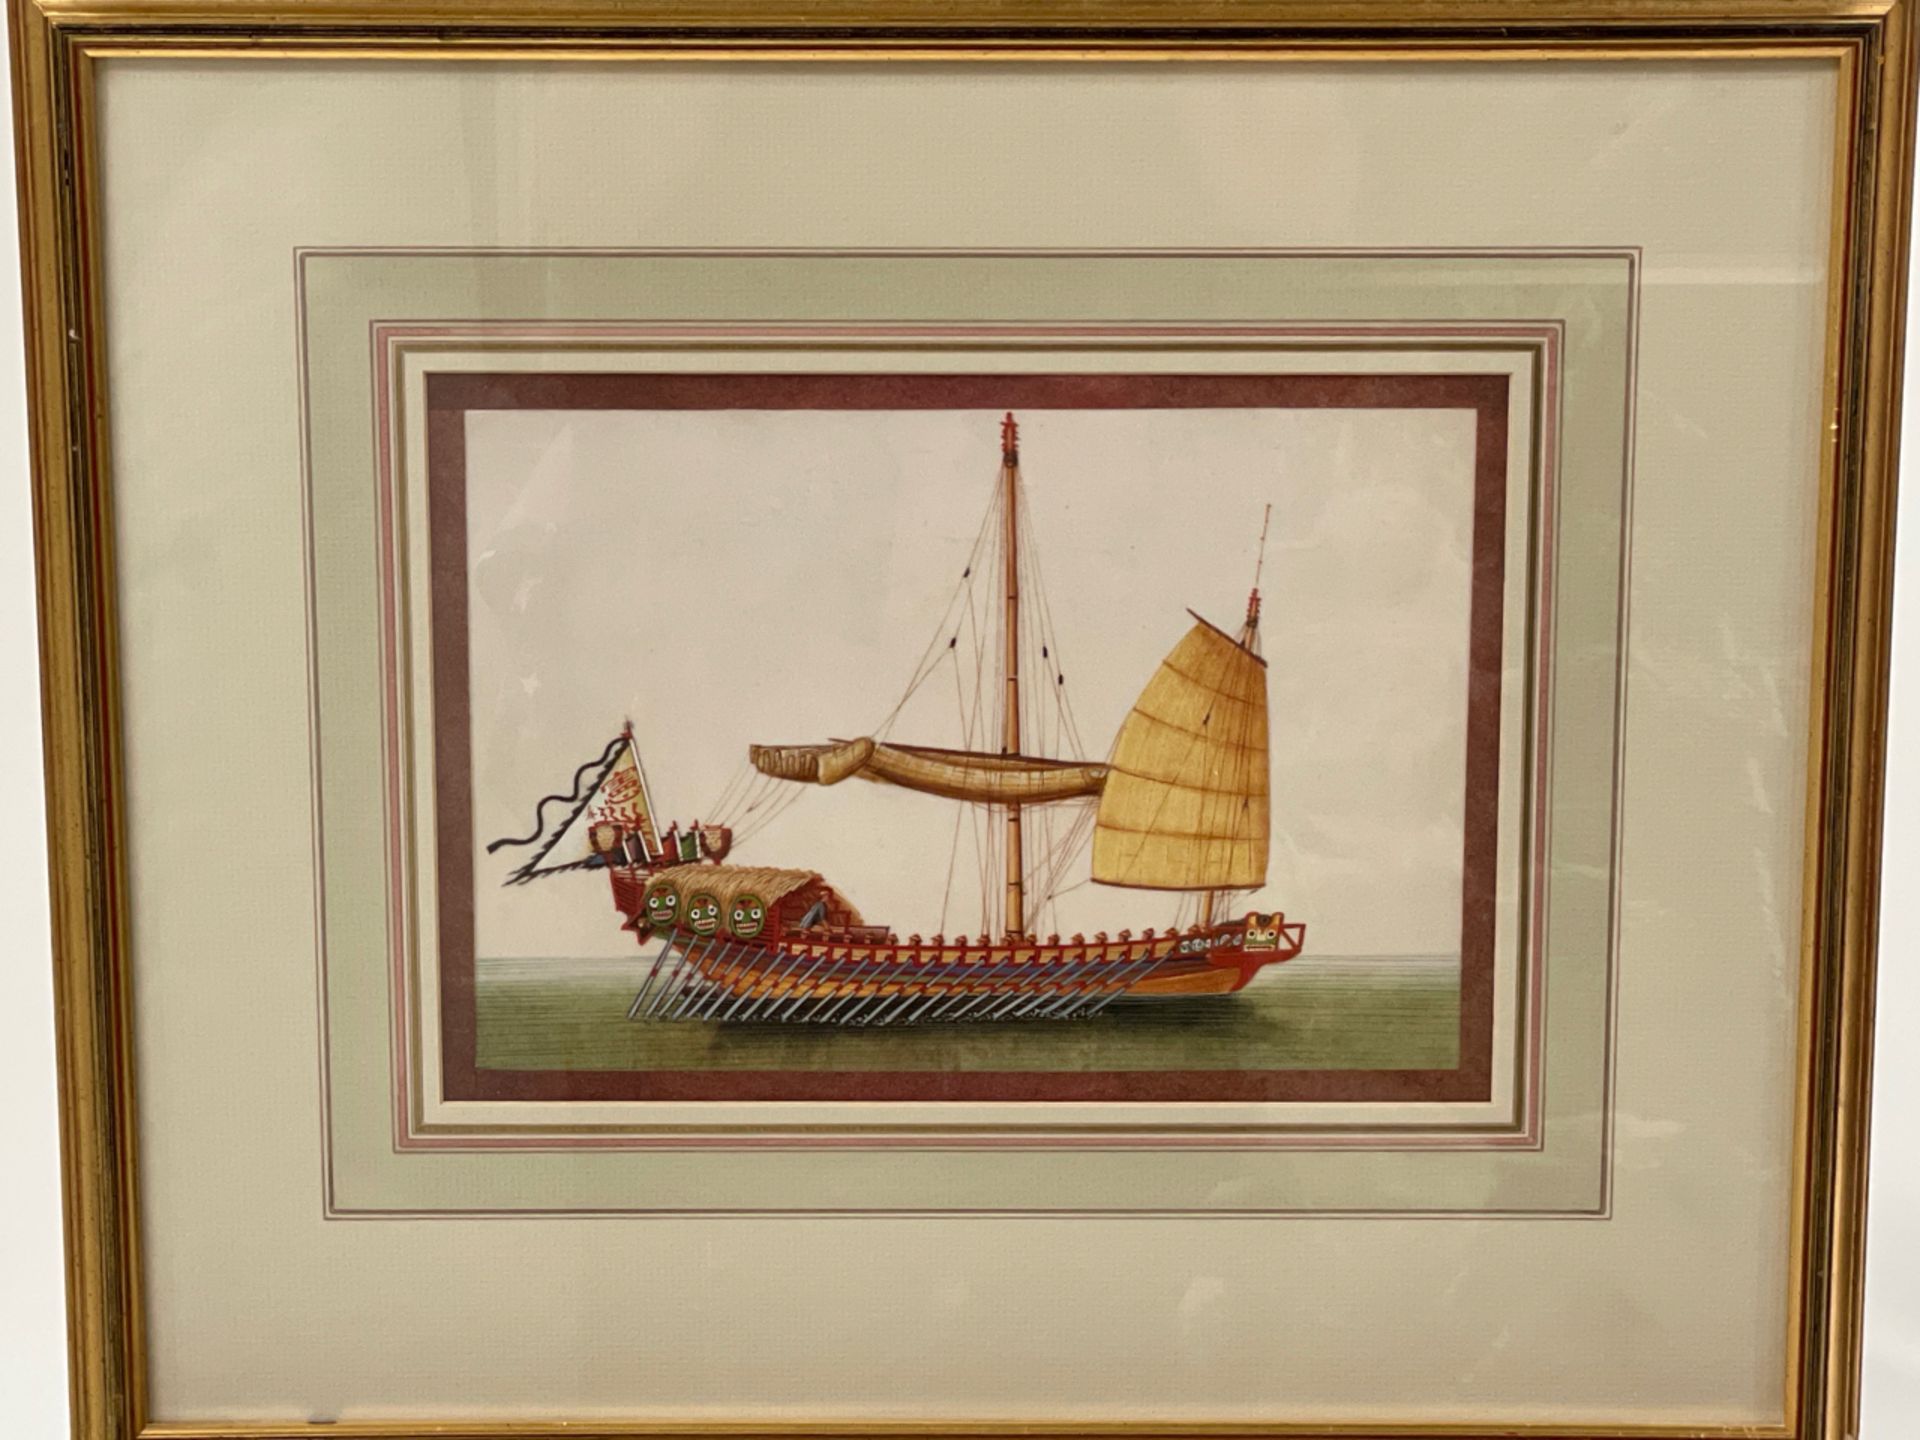 Boat Artwork Prints Set of 2 - Image 2 of 3